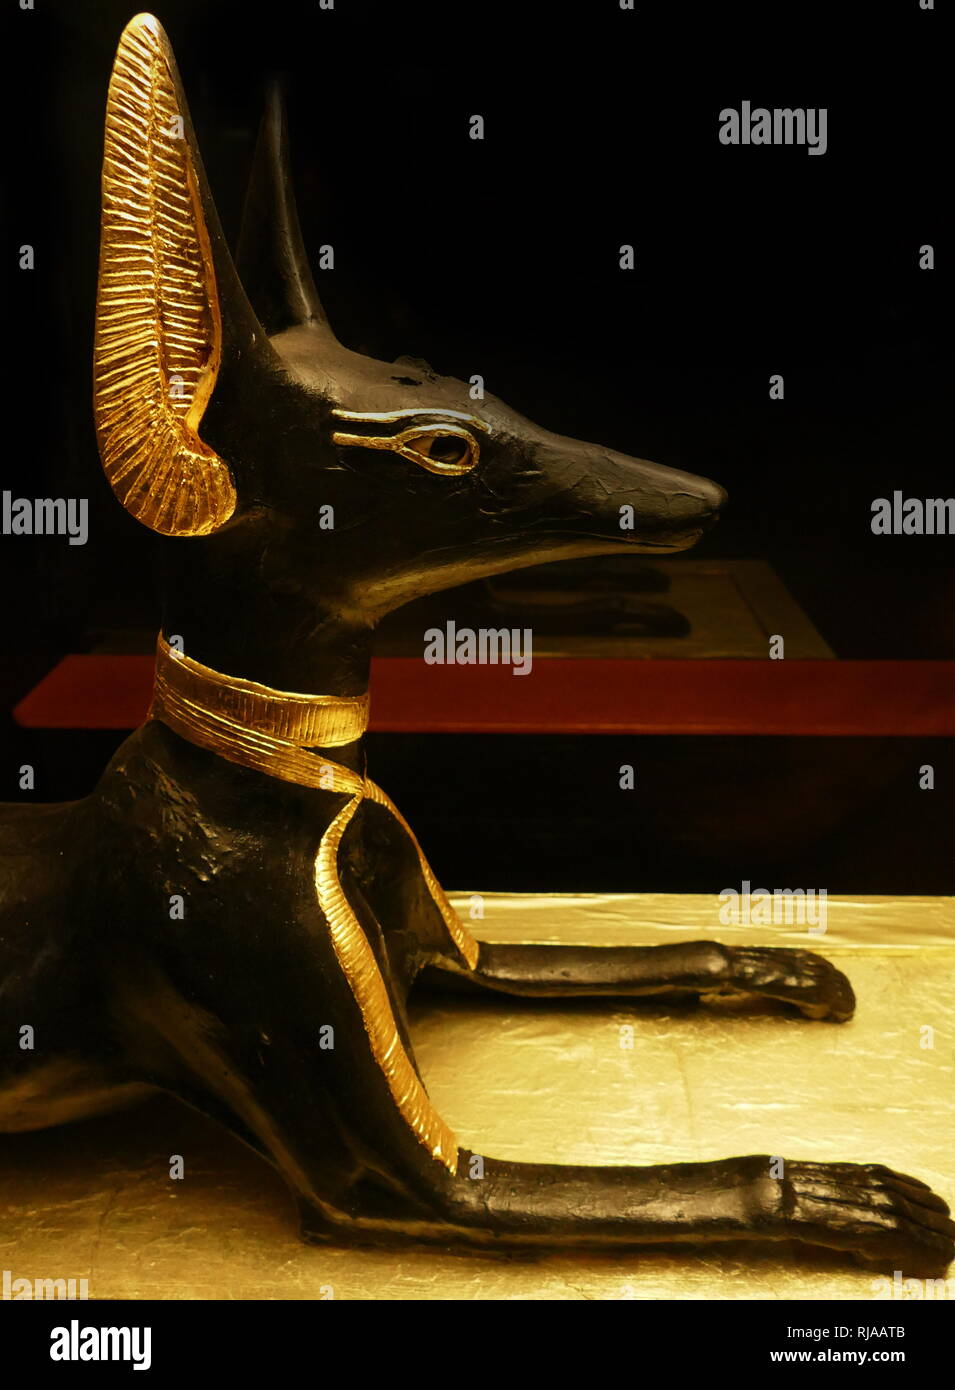 Wiederaufbau des Anubis Schrein; Teil der Götter das Grab von Tut-ench-Amun; (18. Dynastie, Neues Reich). Das Grab (KV 62) war fast unversehrt am 4. November 1922 im Tal der Könige in Theben entdeckt von Howard Carter. Heute ist das Objekt eine Ausstellung im Ägyptischen Museum in Kairo. Die Statue von Anubis, in tierischer Form dargestellt zeigt ein Schakal liegen auf dem Schrein aus Holz, mit schwarzer Farbe und Blattgold überzogen ist. Die Anubis Schrein wurde in der grabkunst Prozession der Pharao verwendet und schließlich vor dem Kanopenkasten im Store Zimmer gestellt. Dies und die Ausrichtung der t Stockfoto